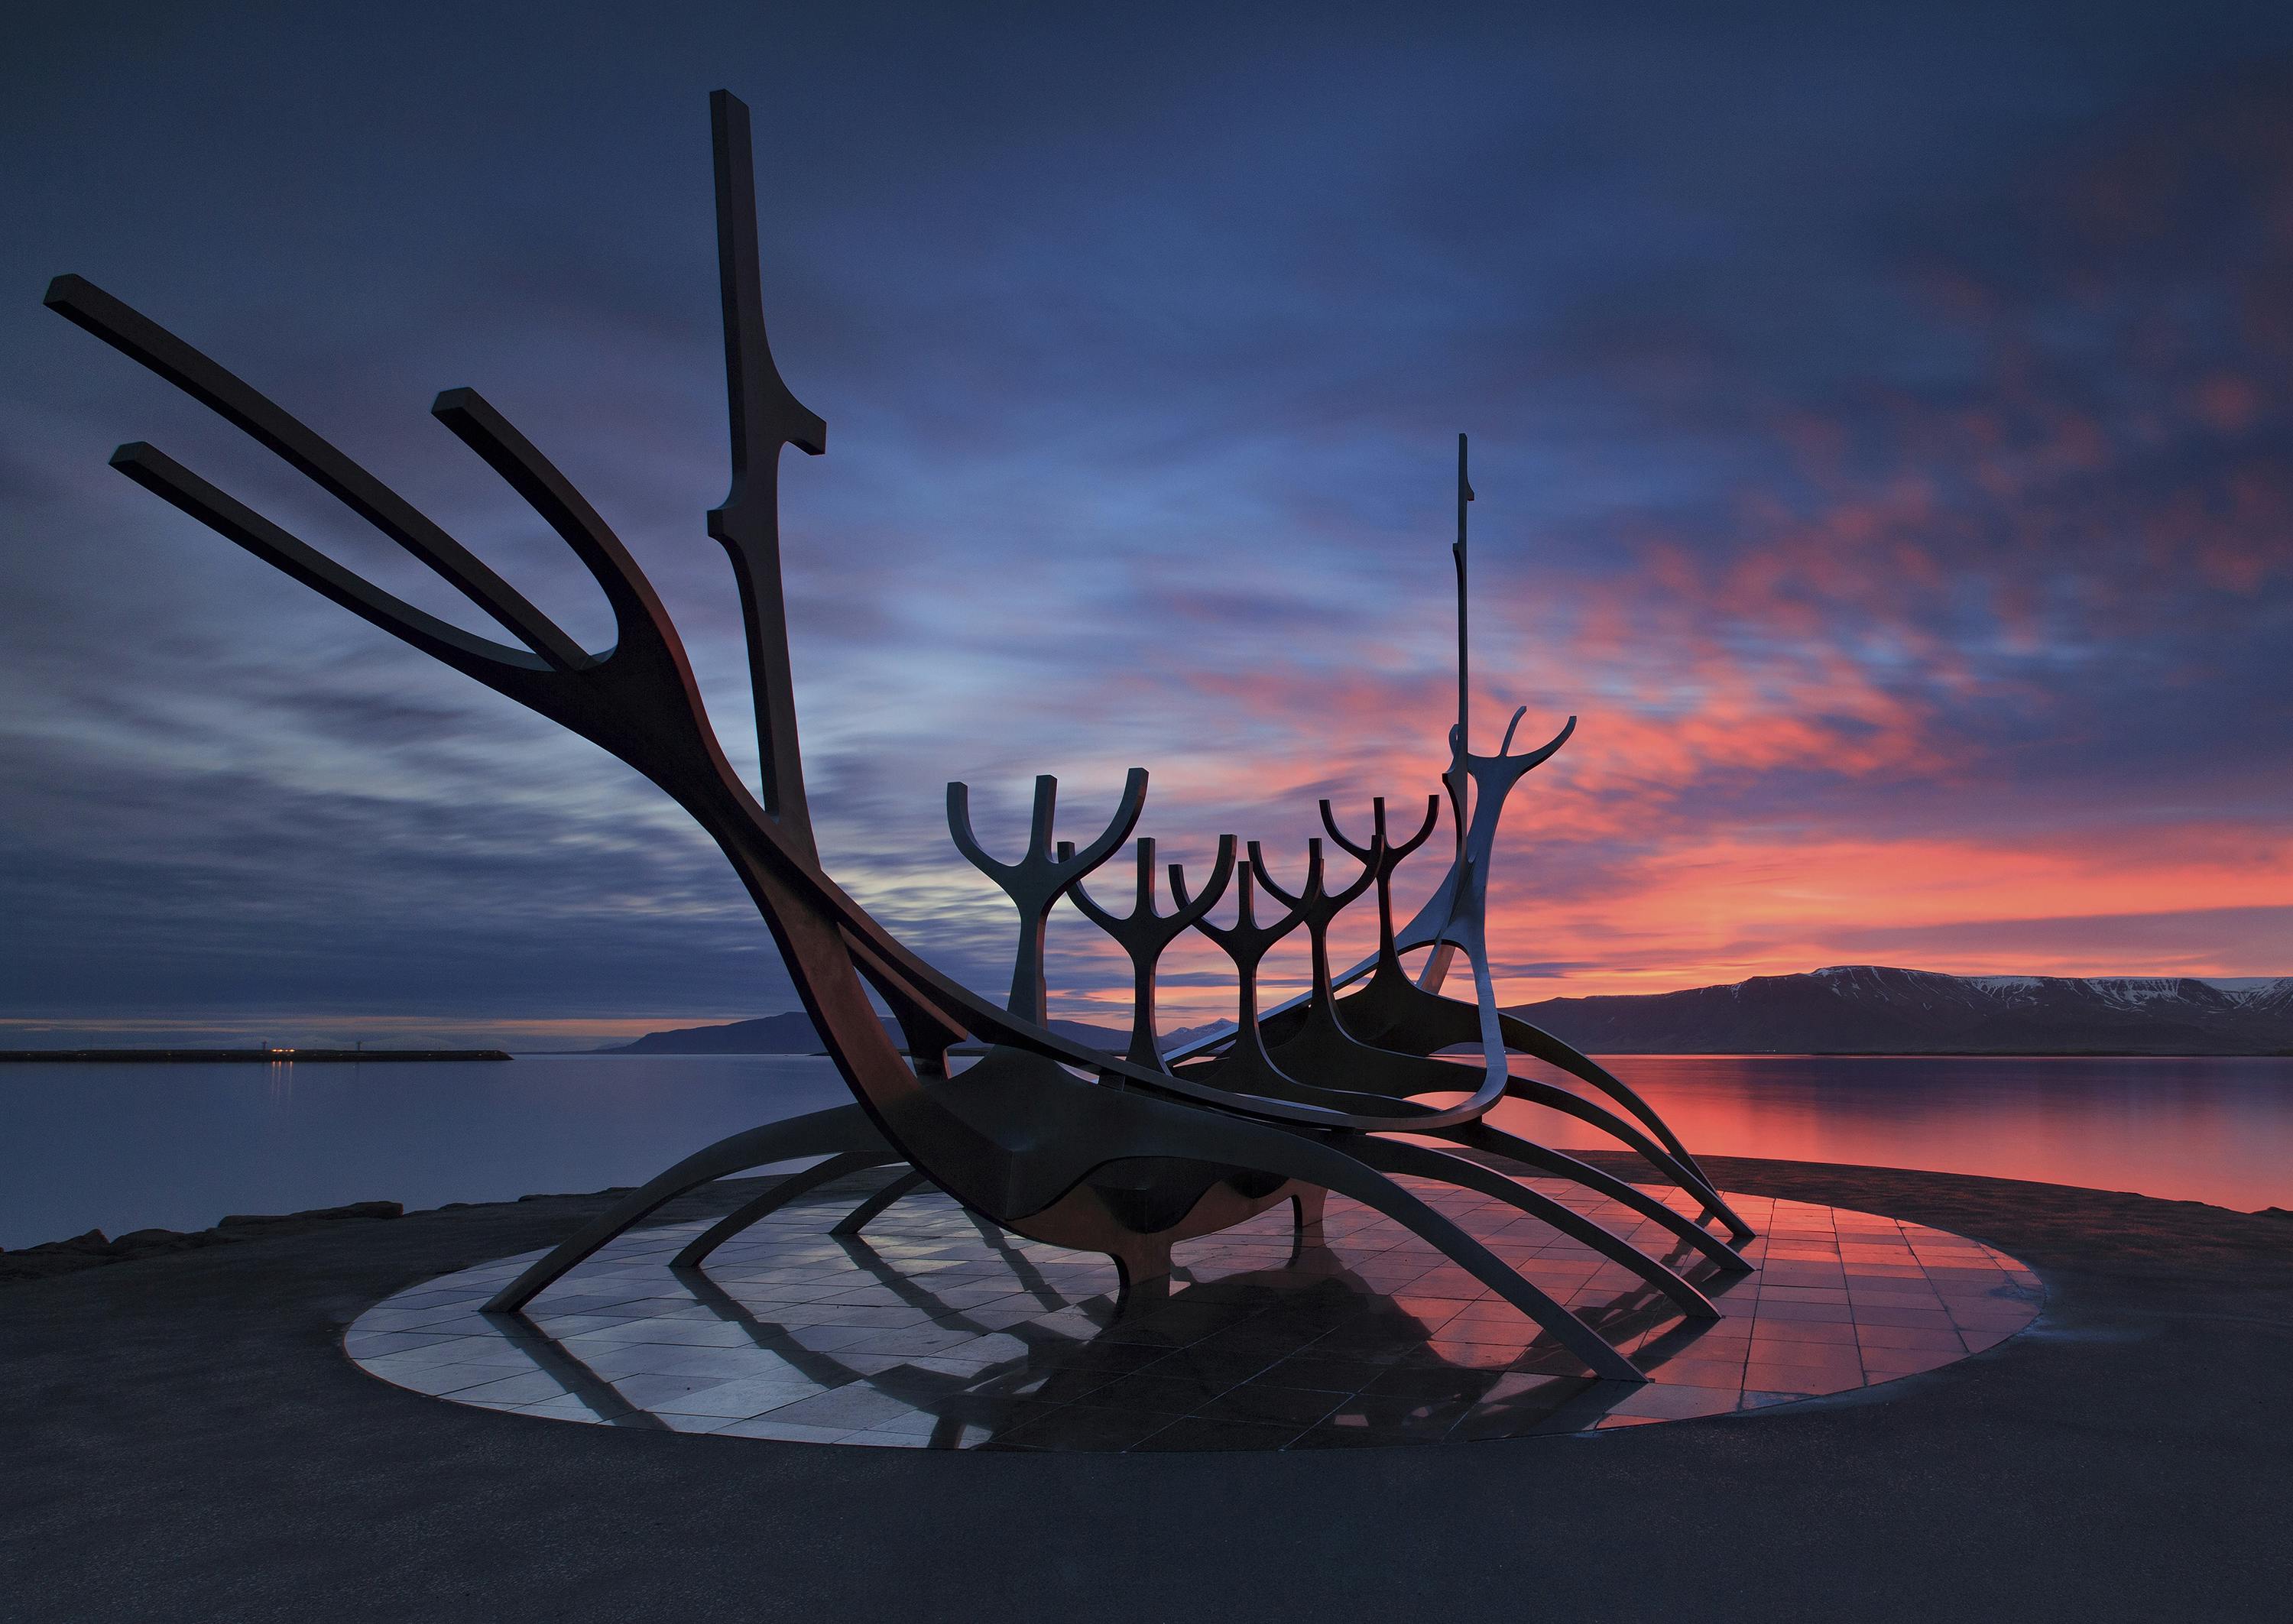 Die Skulptur Sun Voyager bei Sonnenuntergang. Dieses großartige Kunstwerk steht neben der Konzerthalle Harpa mitten in Reykjavík.